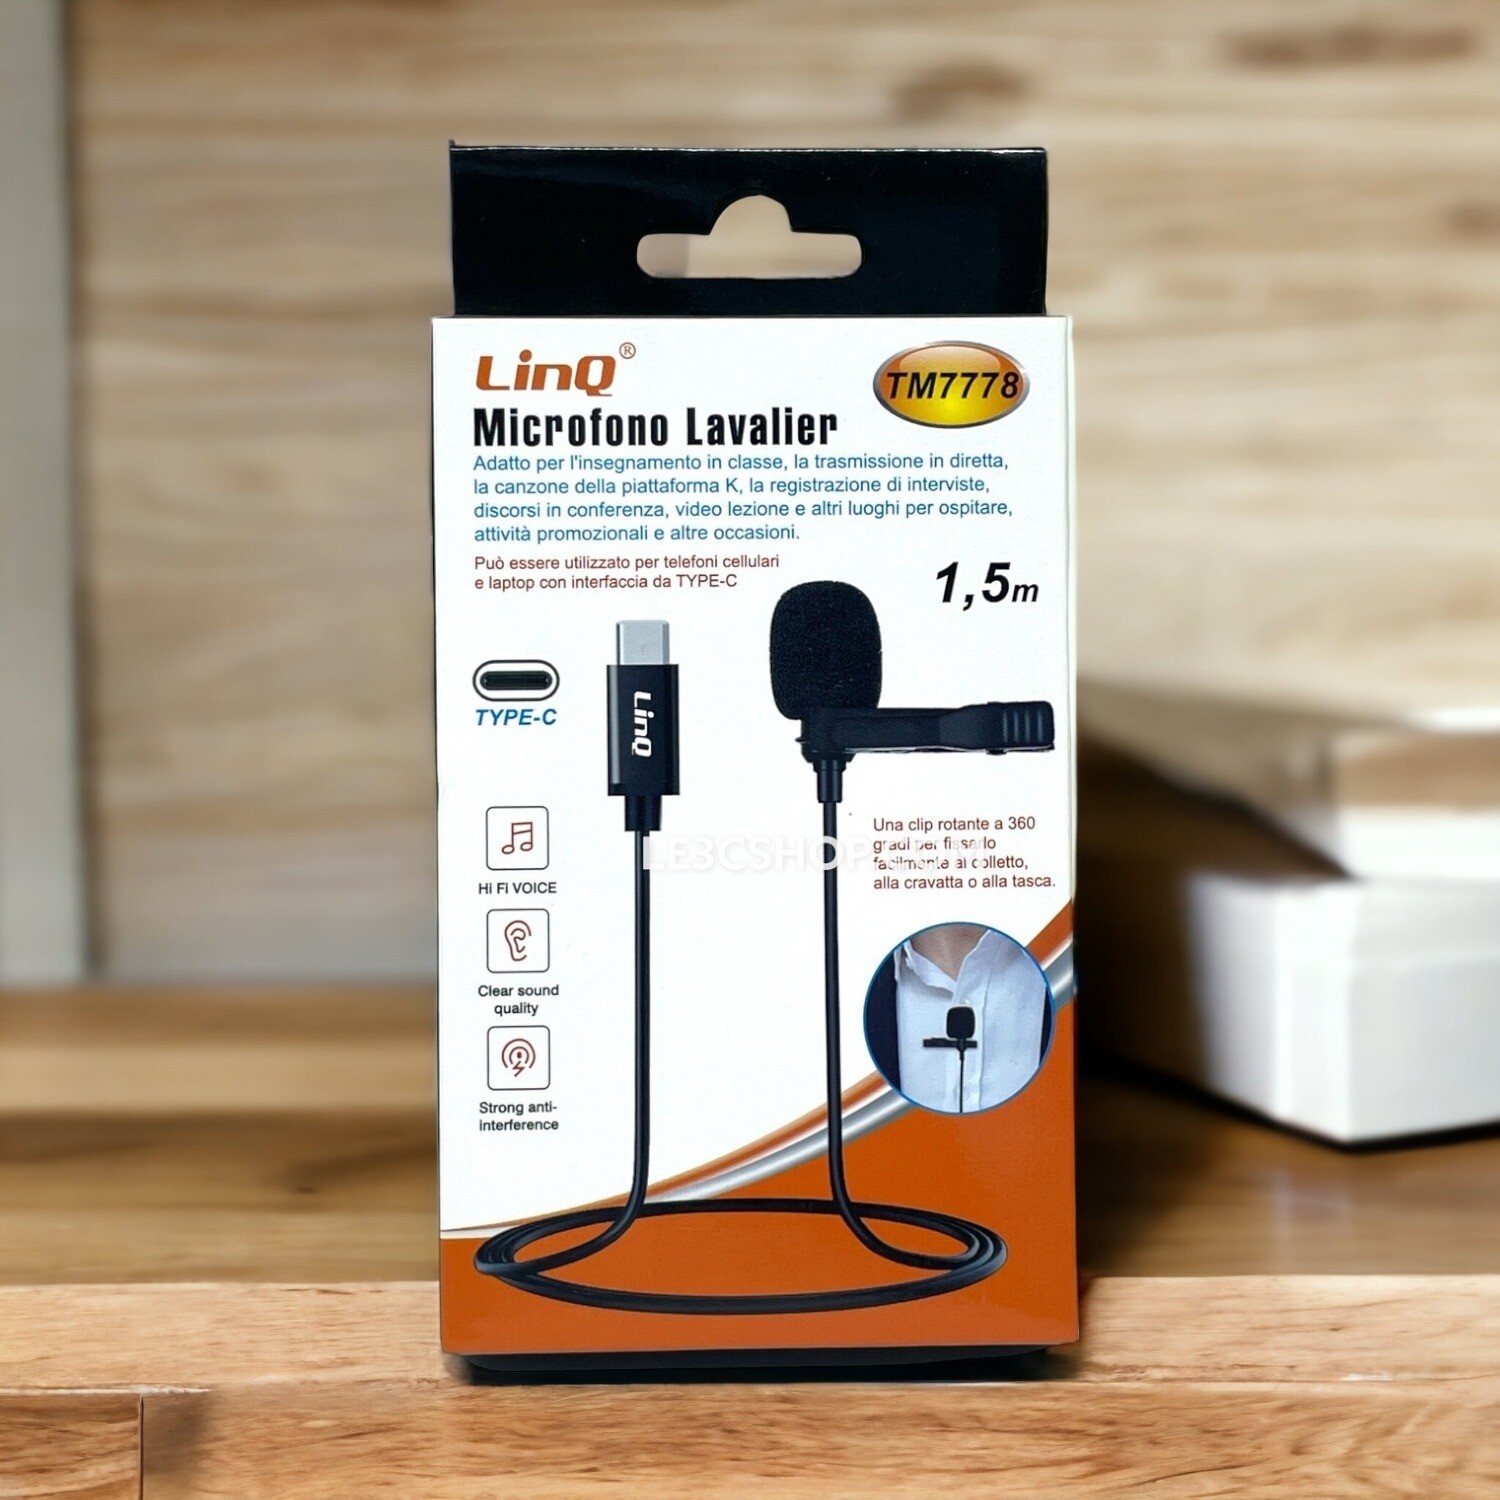 Microfono Lavalier Linq TM7778 - Audio Hi-Fi e Connettività Type-C!